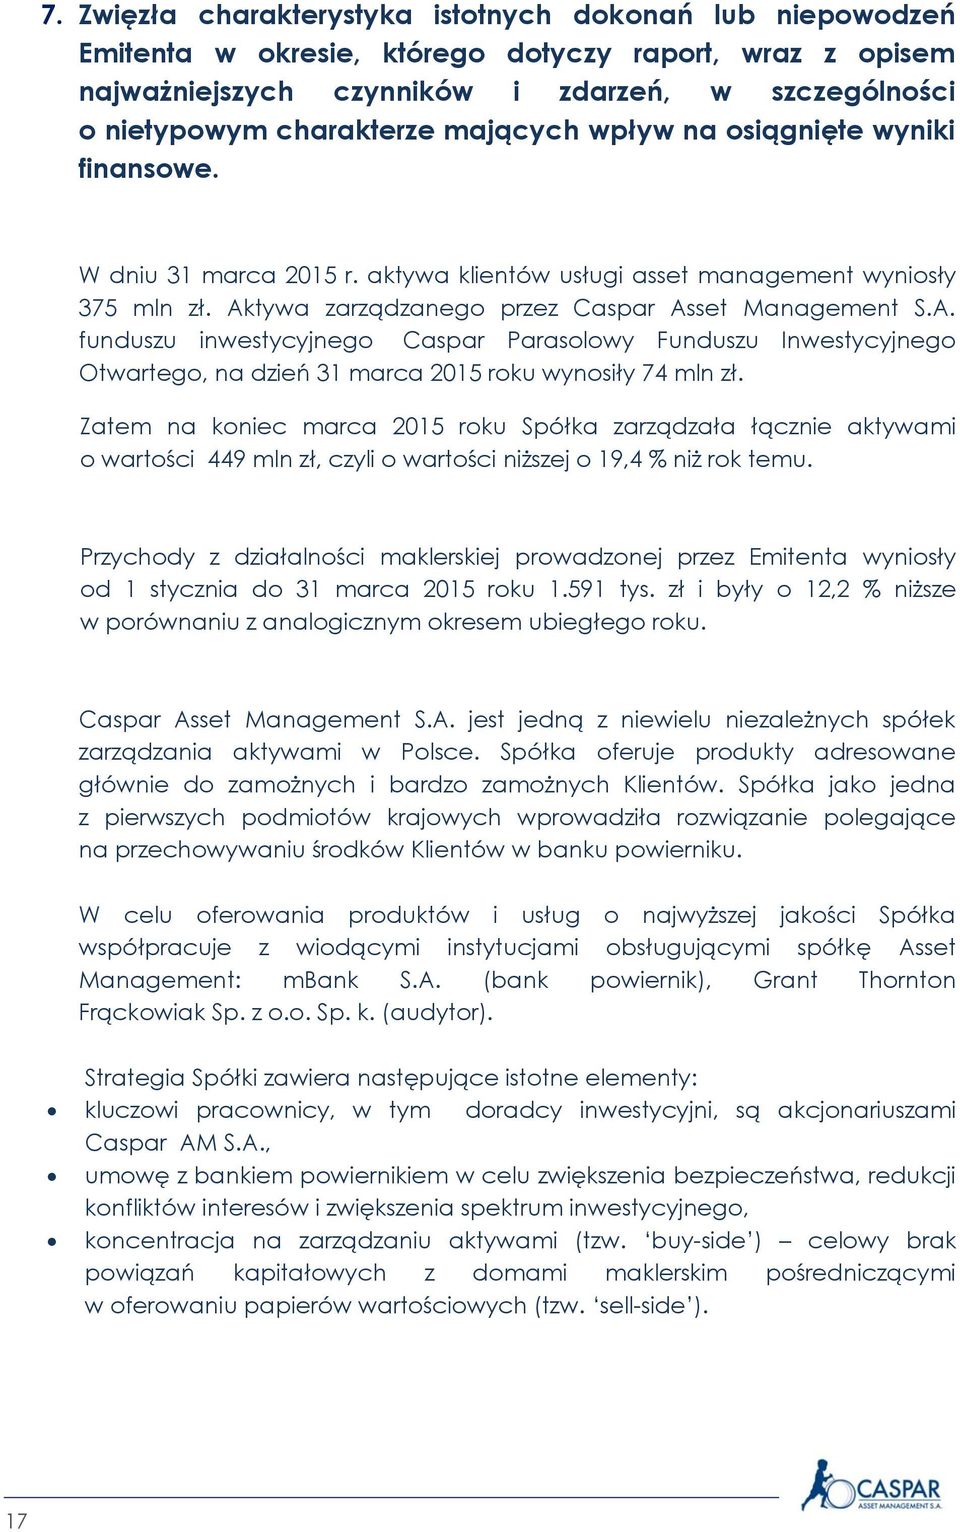 tywa zarządzanego przez Caspar Asset Management S.A. funduszu inwestycyjnego Caspar Parasolowy Funduszu Inwestycyjnego Otwartego, na dzień 31 marca 2015 roku wynosiły 74 mln zł.